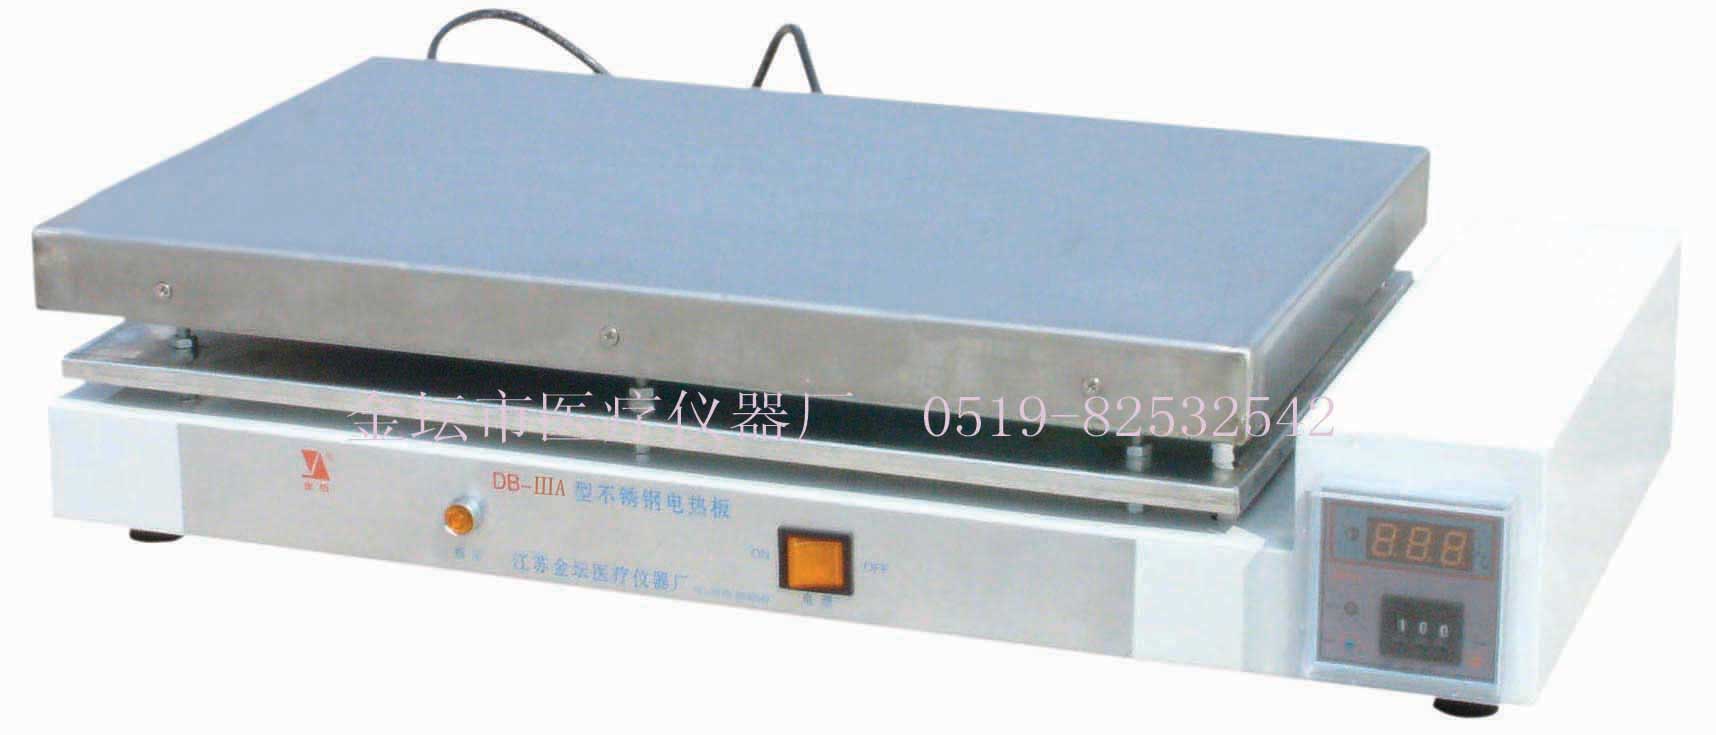 DB-ⅢA控温不锈钢电热板